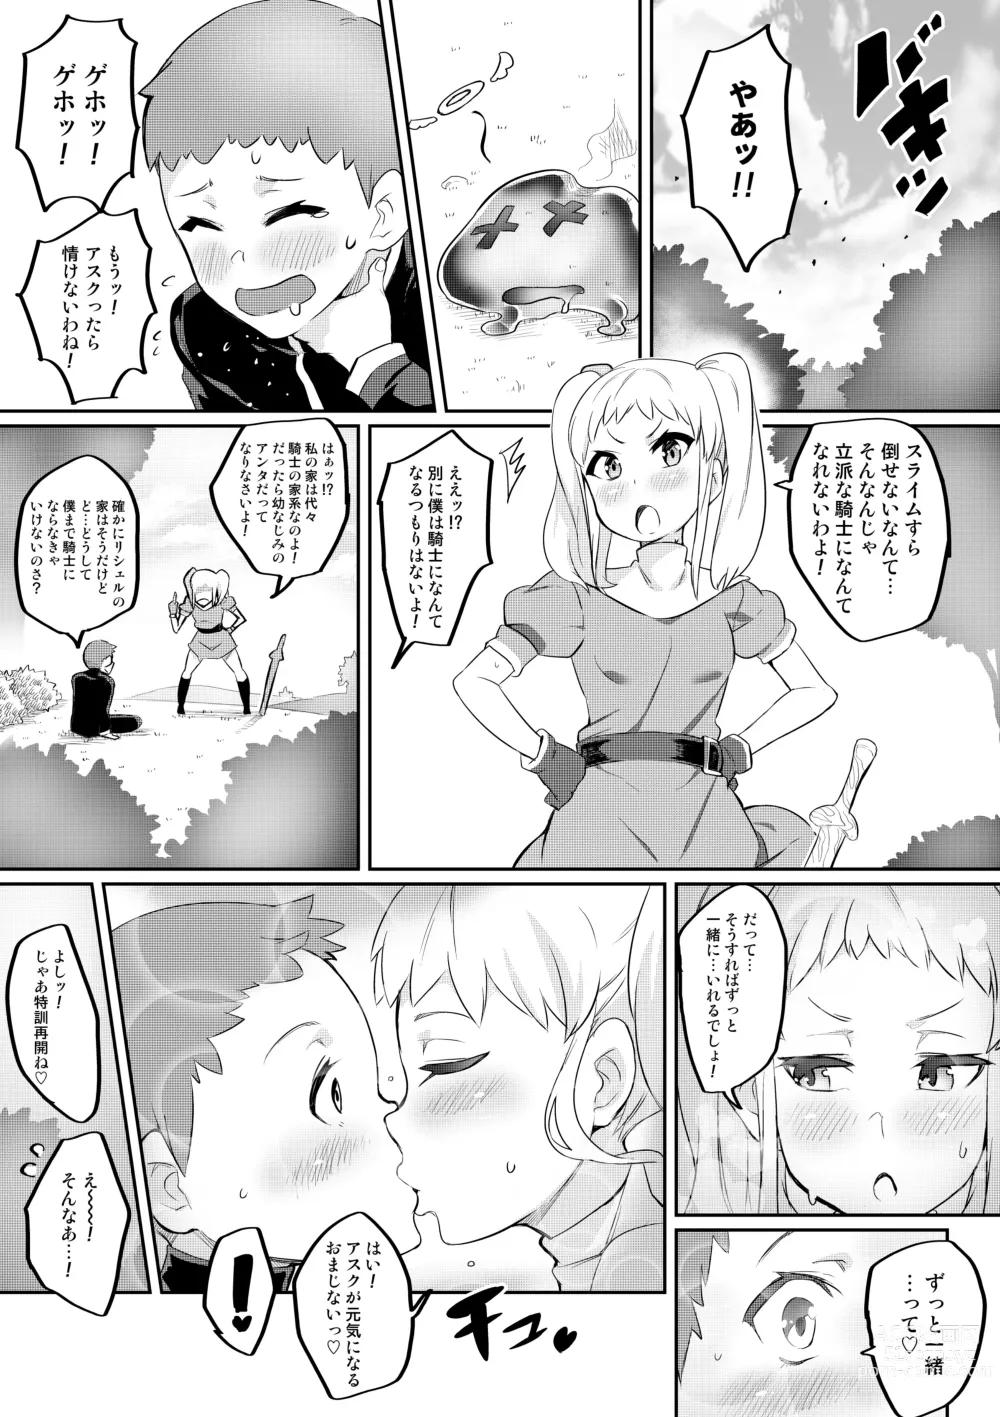 Page 2 of doujinshi Kimi ga Kaeranai Yoru Dokoka de Midara ni Buta ga Naku ~Otameshi de Kaitemita-ban~